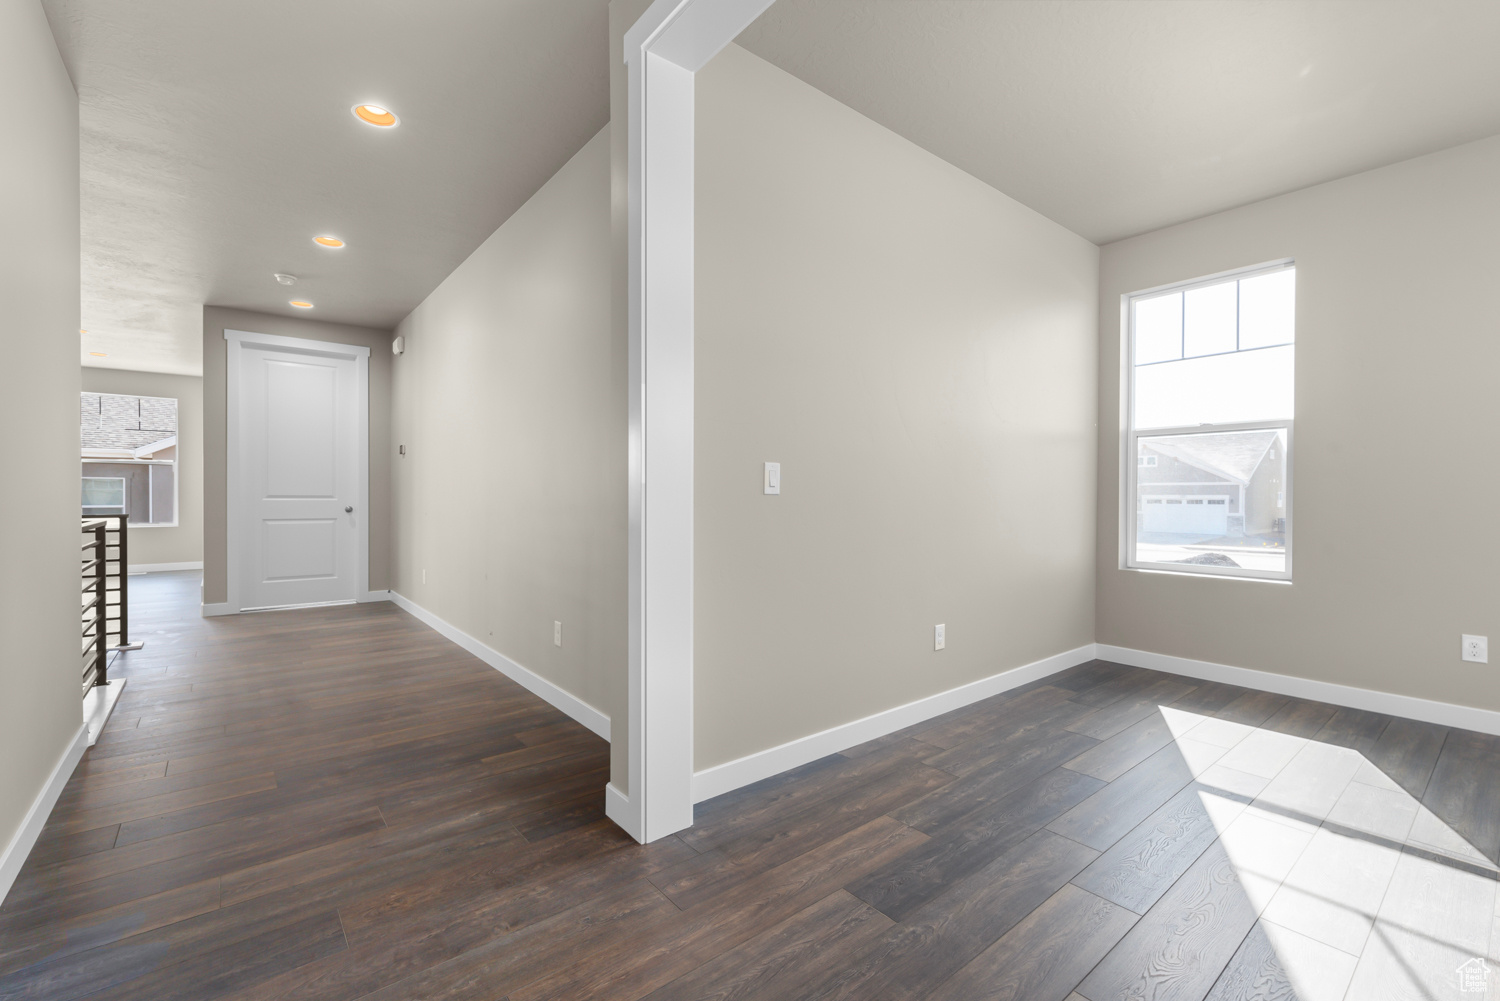 Hall with dark hardwood / wood-style floors